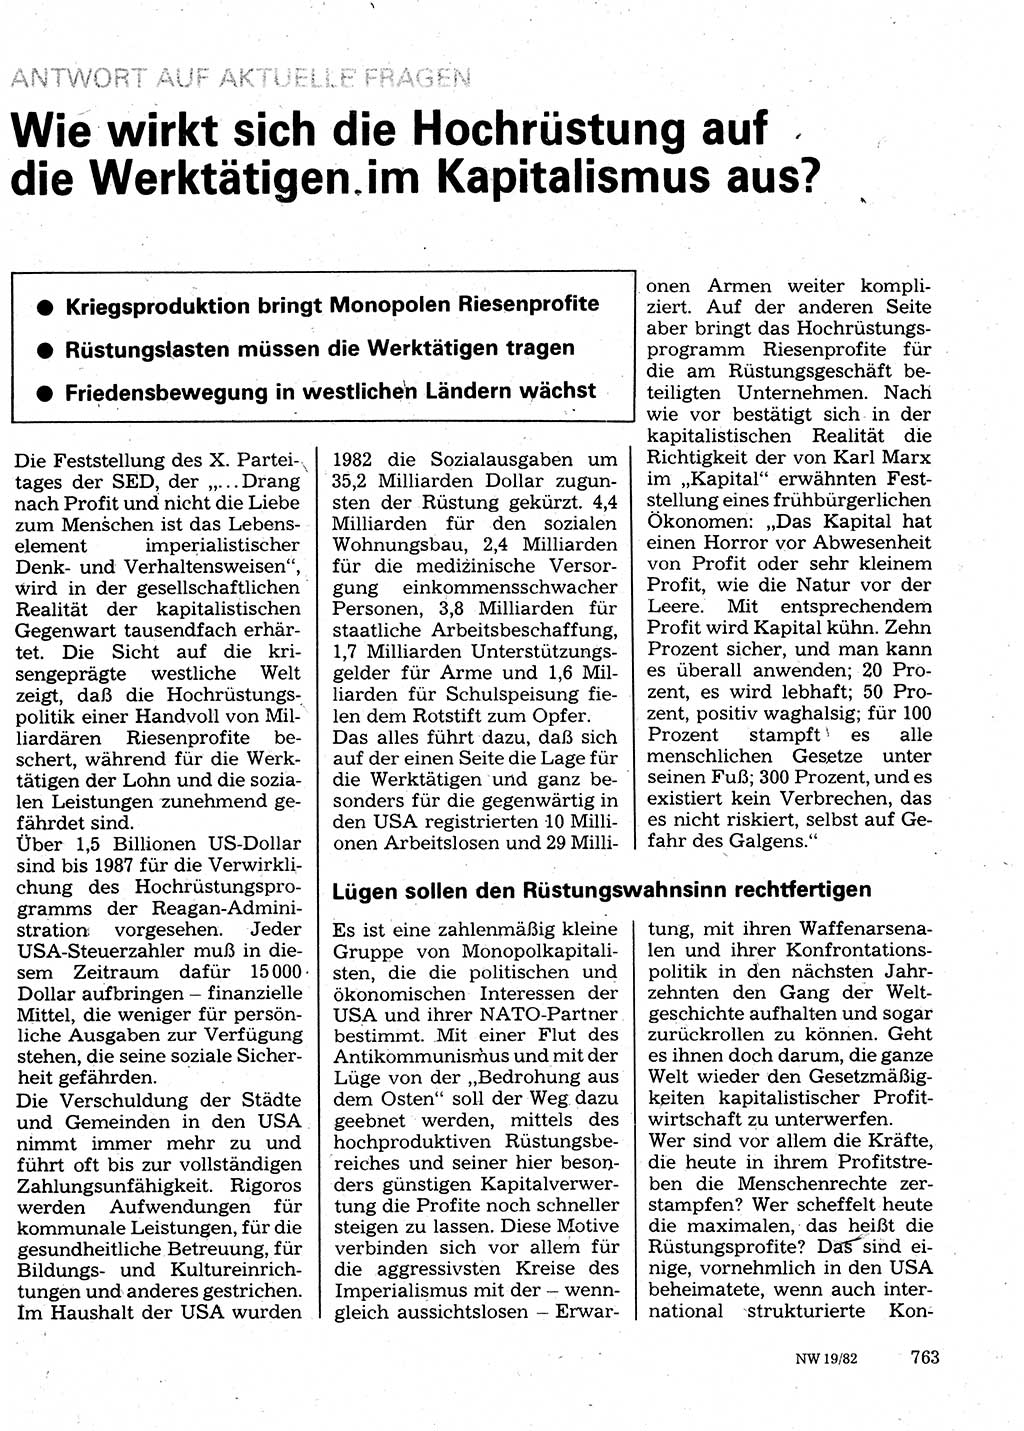 Neuer Weg (NW), Organ des Zentralkomitees (ZK) der SED (Sozialistische Einheitspartei Deutschlands) für Fragen des Parteilebens, 37. Jahrgang [Deutsche Demokratische Republik (DDR)] 1982, Seite 763 (NW ZK SED DDR 1982, S. 763)